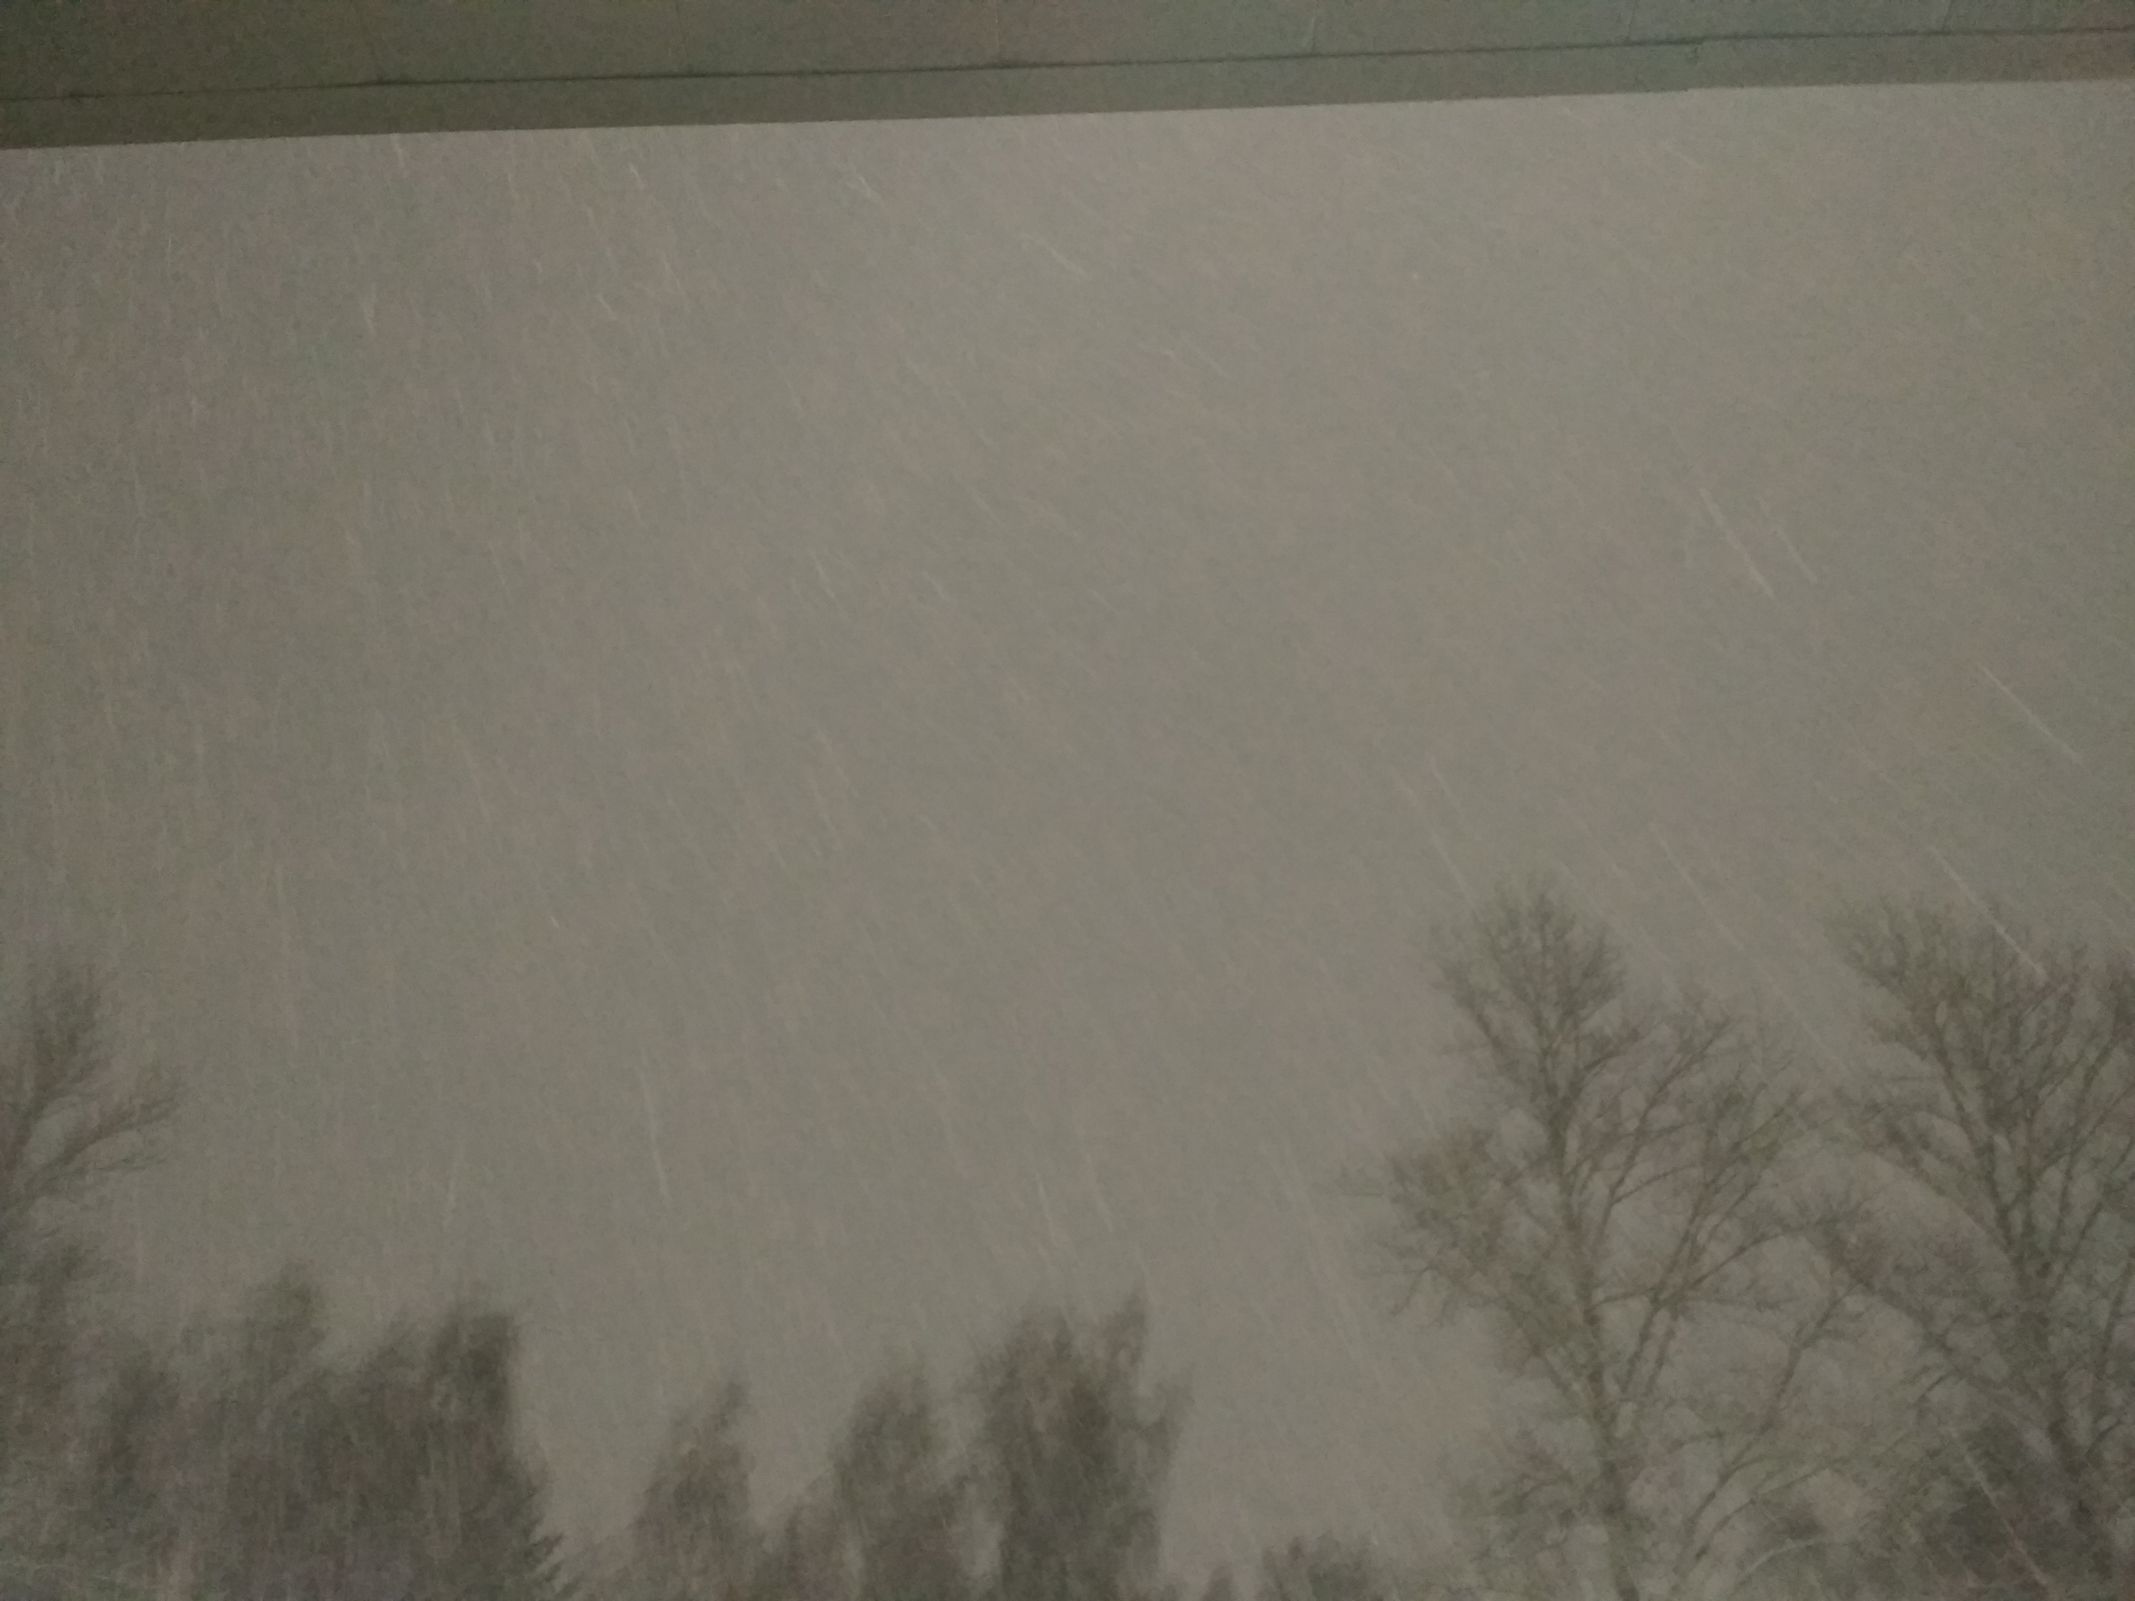 МЧС в Ярославской области предупредило жителей о мокром снеге и гололедице